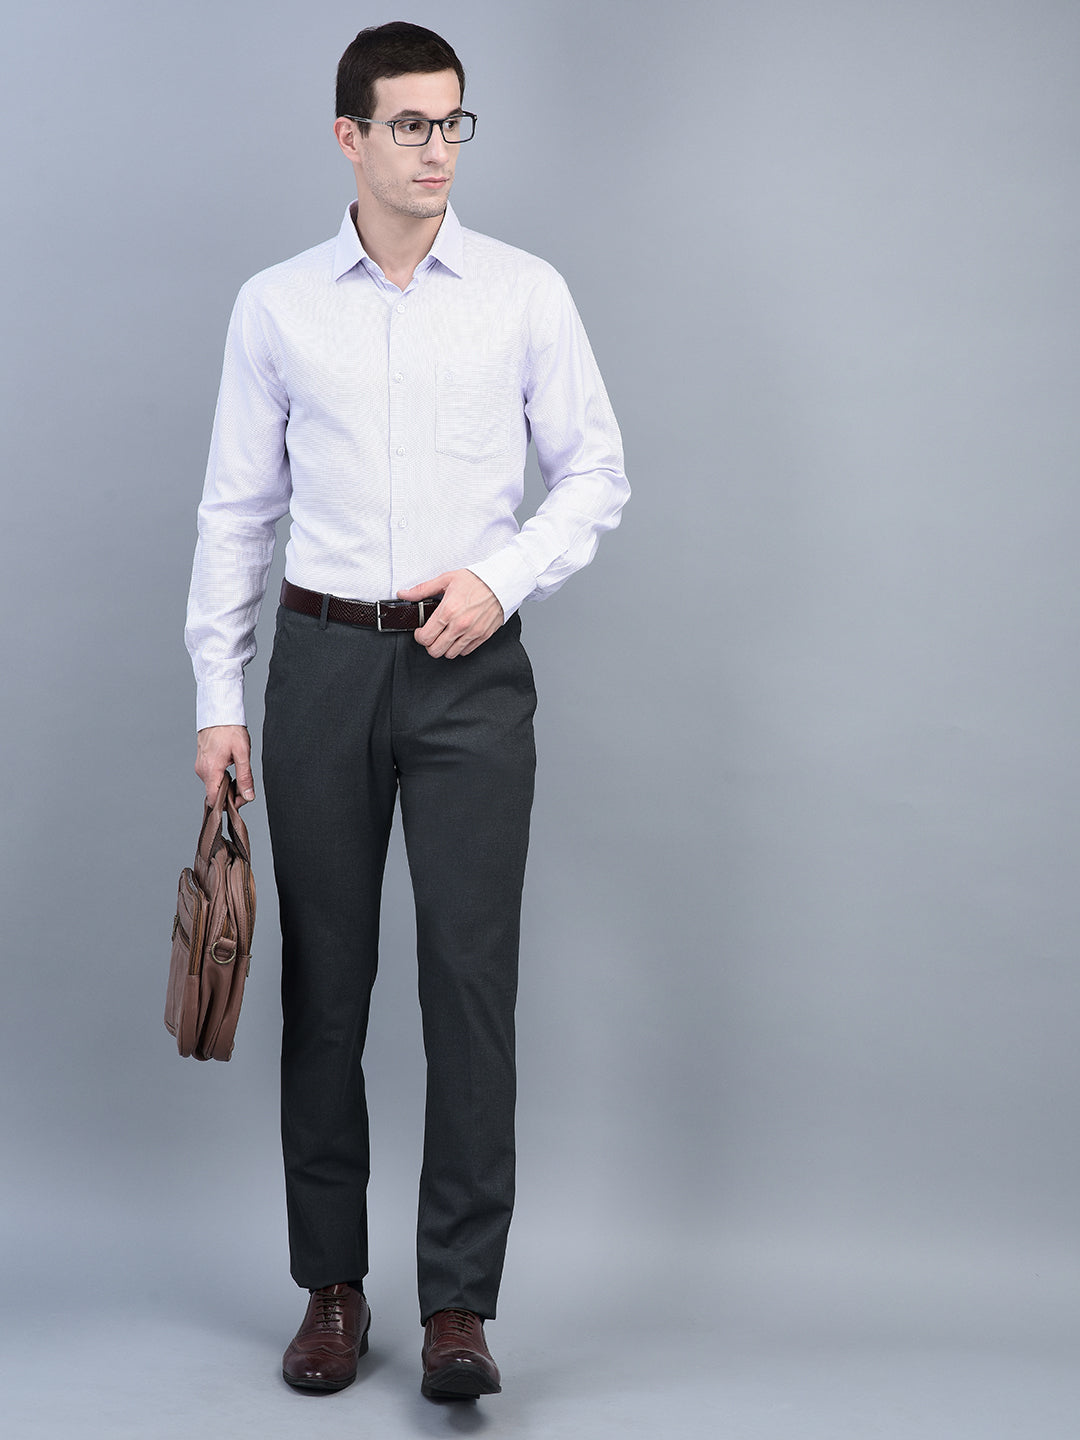 Amazon.com: n/a Women Suits Office Lady Business Work Uniforms Formal Pant  Suits Female Plus Size 3 Piece Set Pants and Vest (Color : Blue, Size : XL  Code) : ביגוד, נעליים ותכשיטים